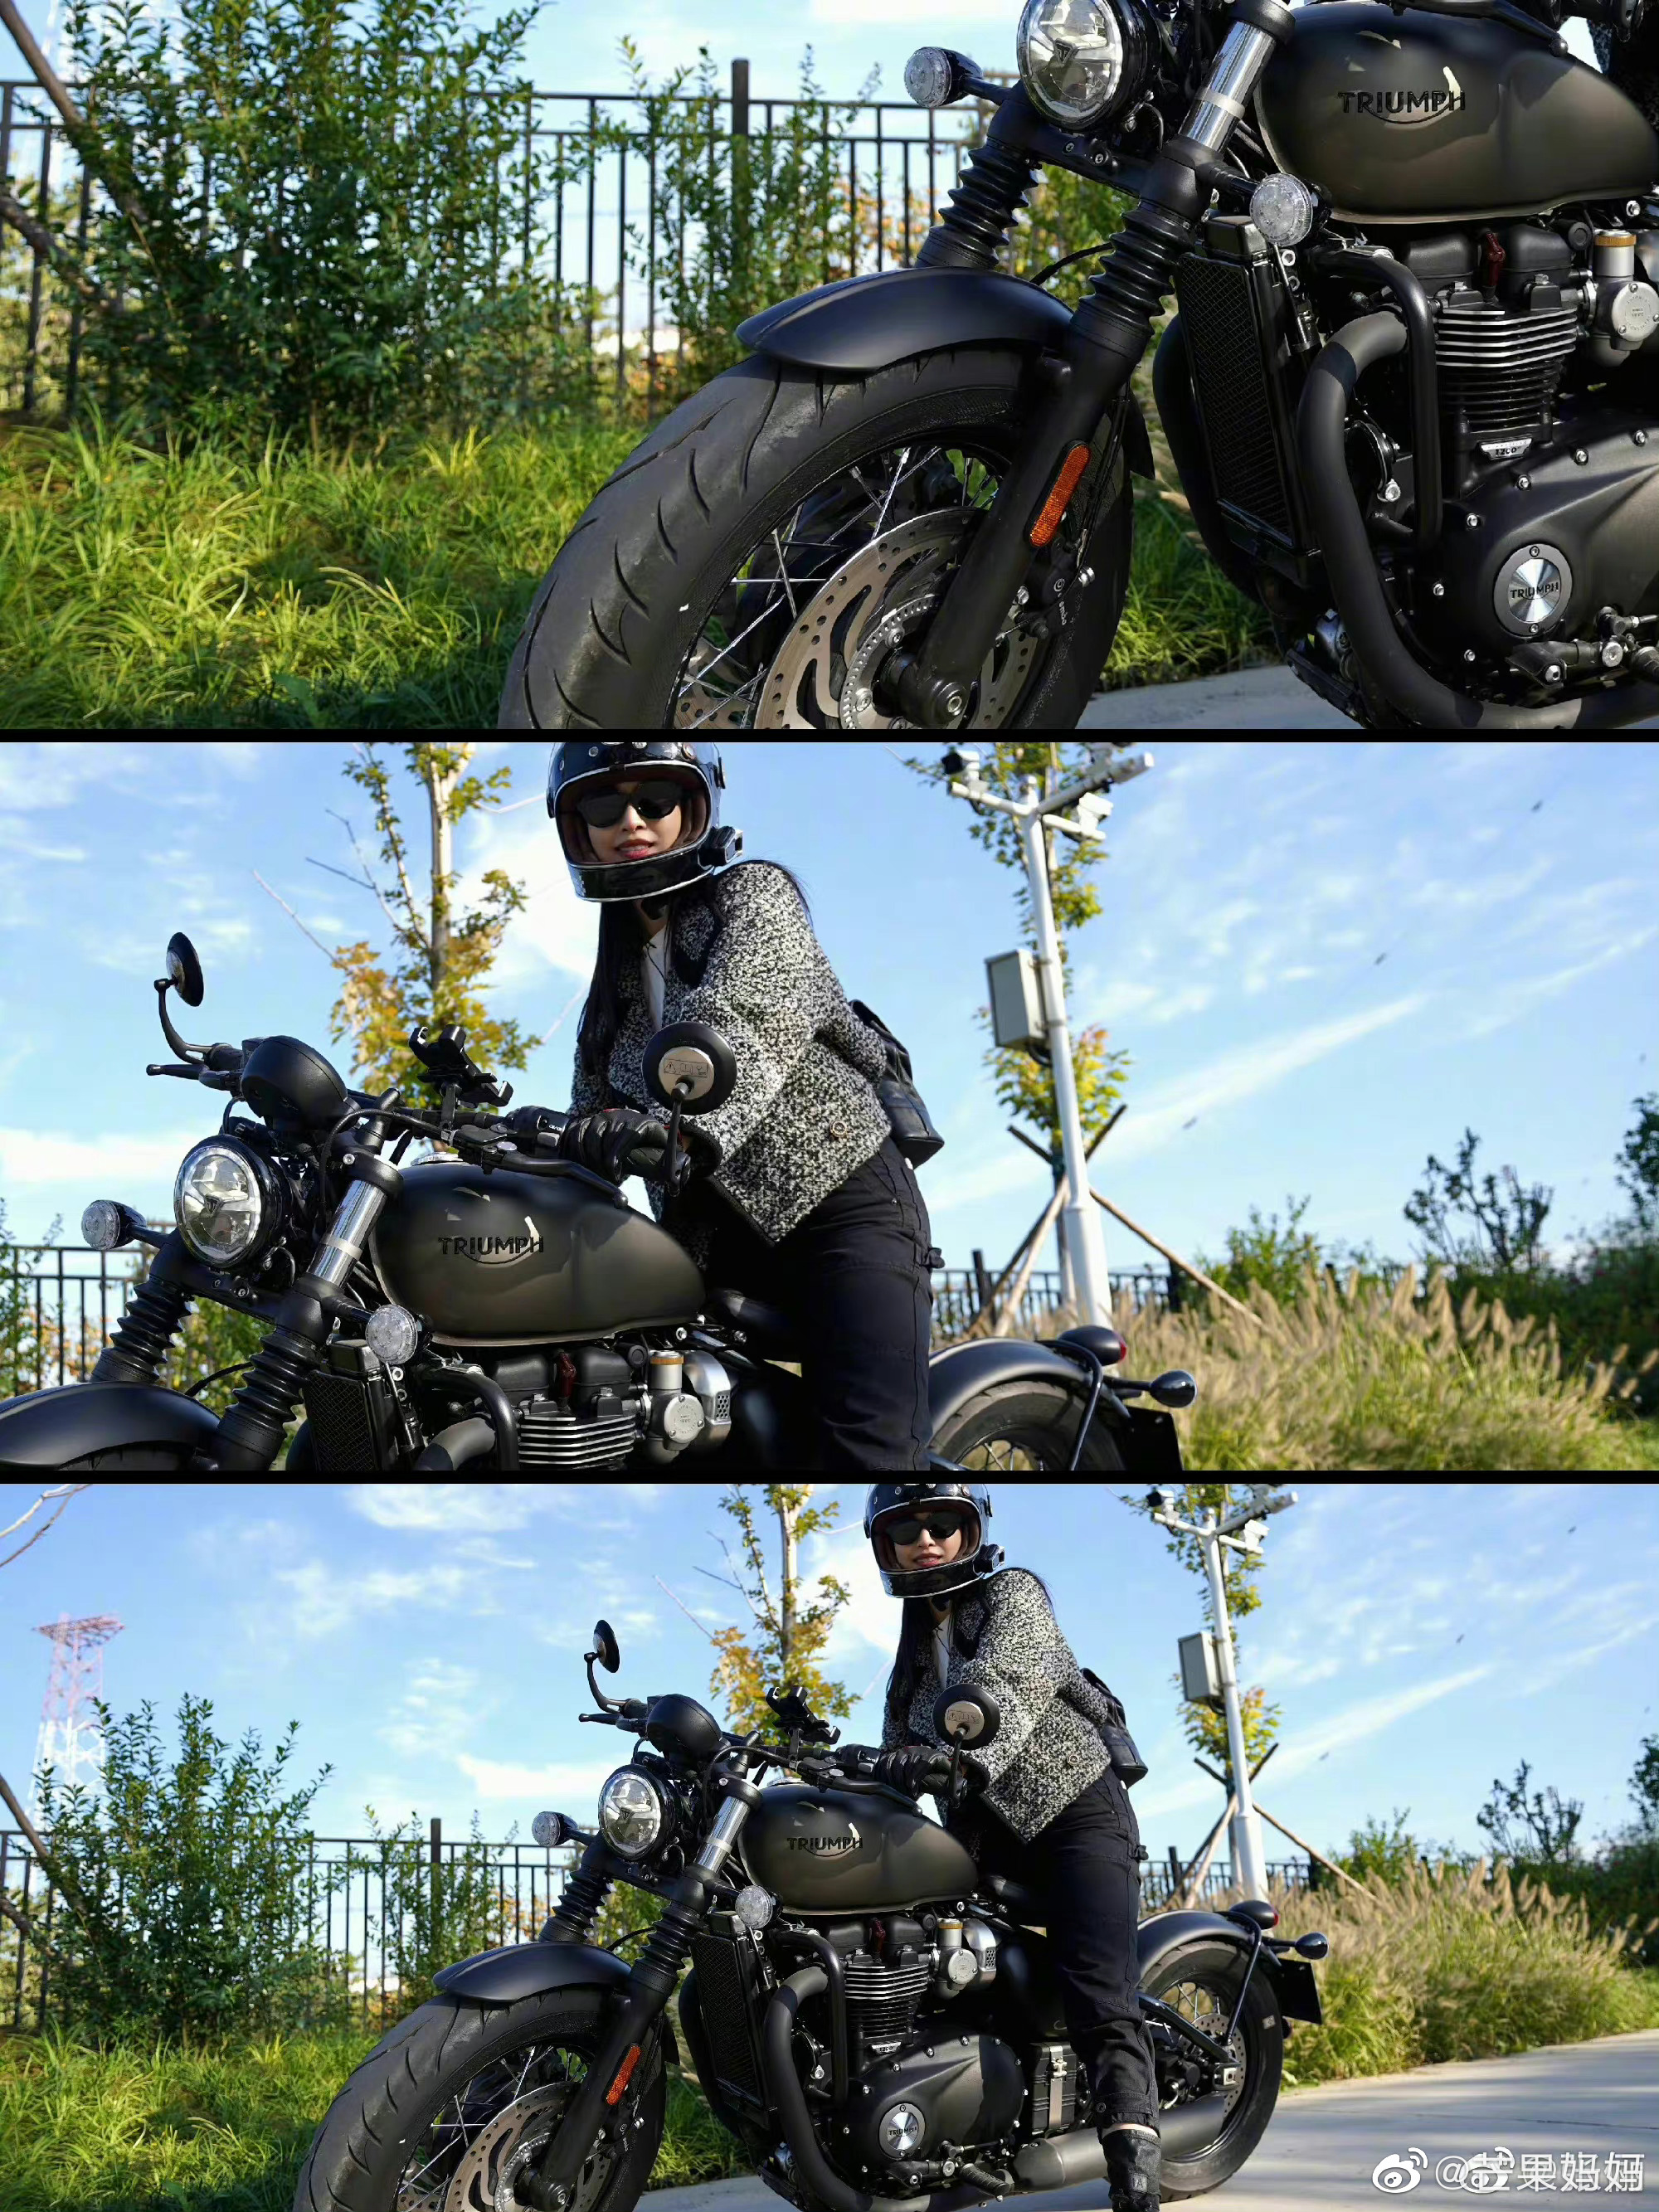 女骑示范穿搭 真是有够帅的 UB绑带式皮衣套装_摩托车社区_易车社区